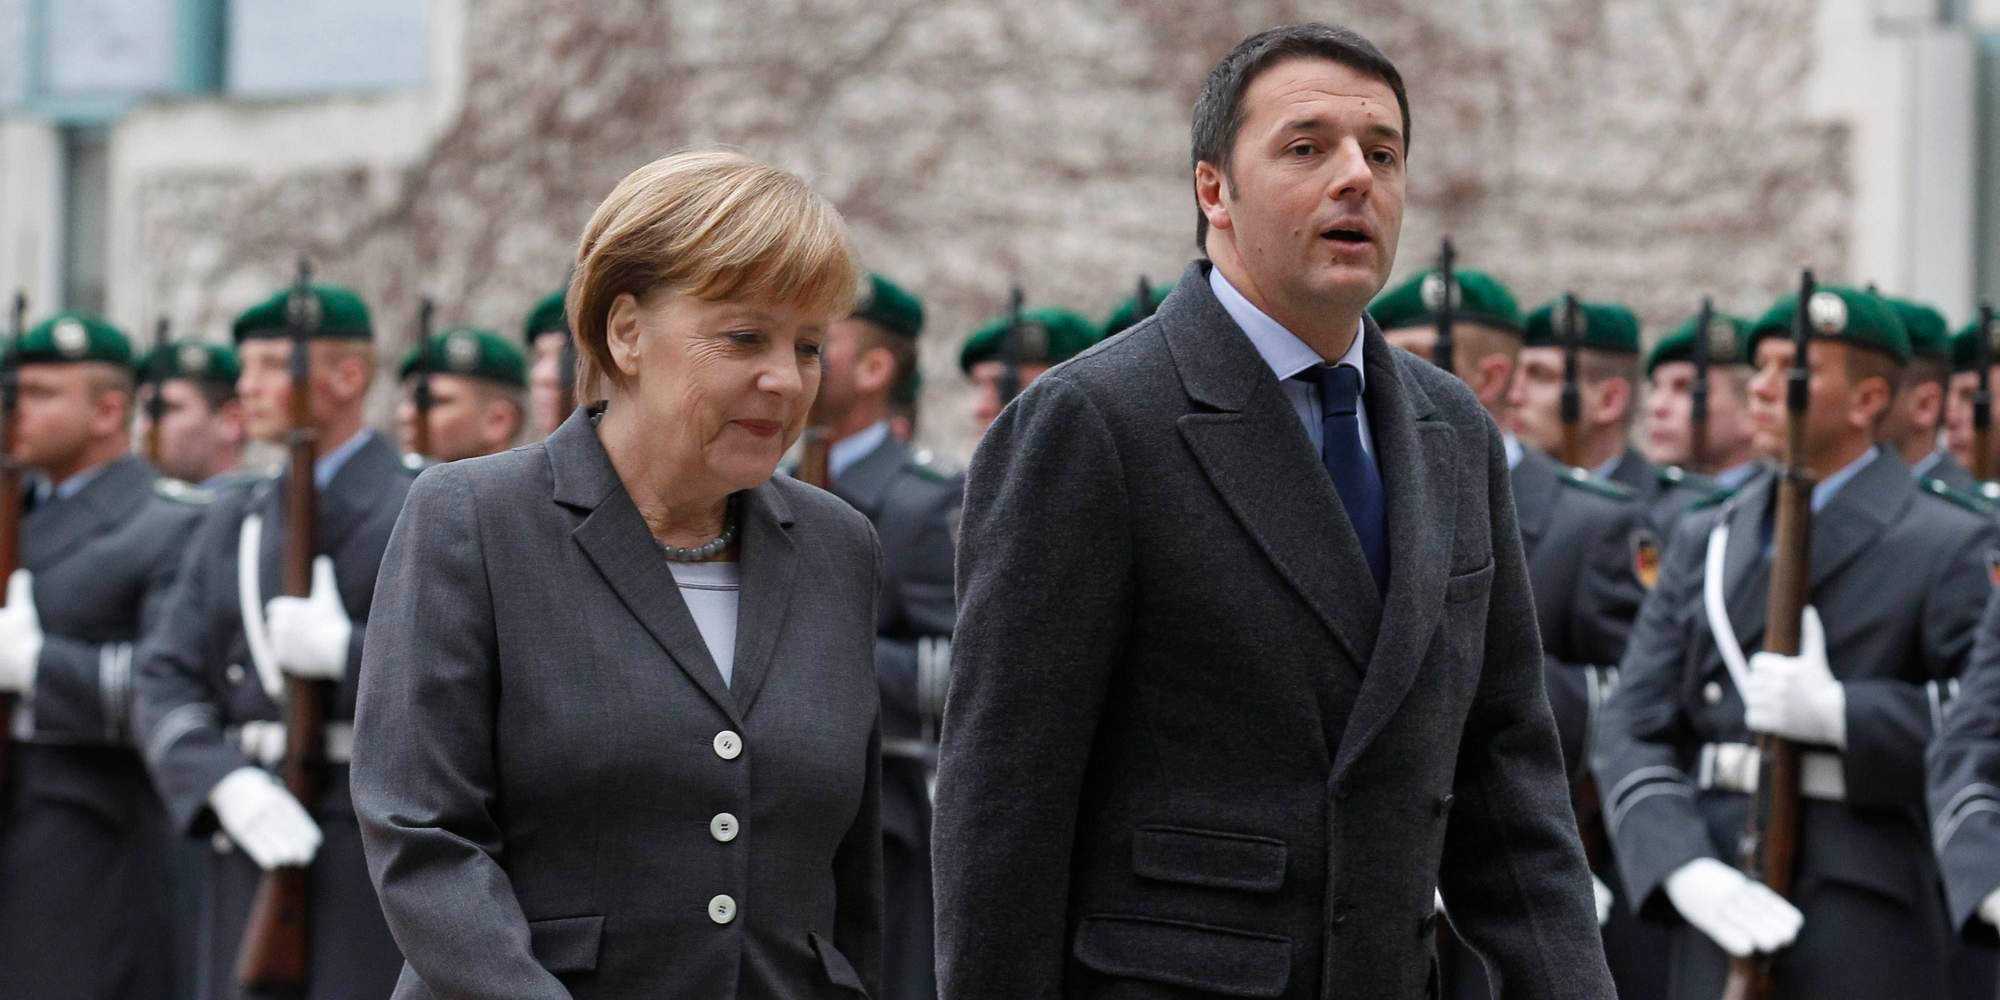 Merkel su vertice bilaterale con Renzi: "Sono rimasta veramente impressionata"